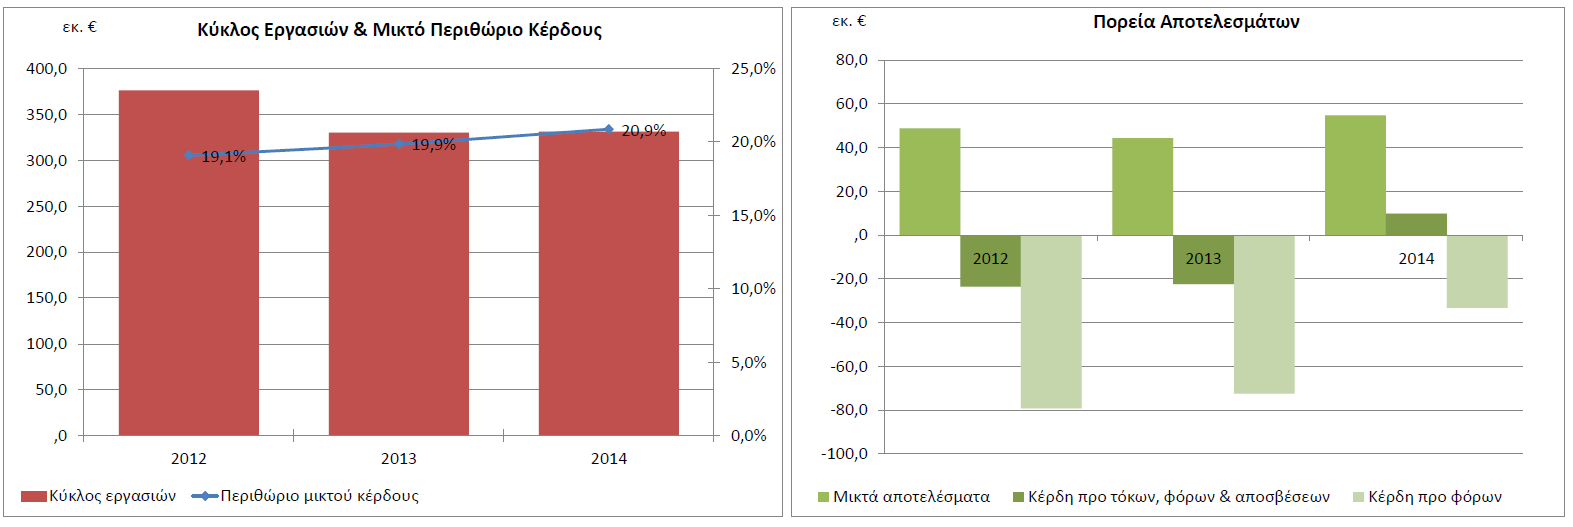 περίοδο 14/12 κατά 19,95%, ενώ η αντίστοιχη τιμή στο σύνολο των ελληνικών επιχειρήσεων είναι θετική στο 7,5%.